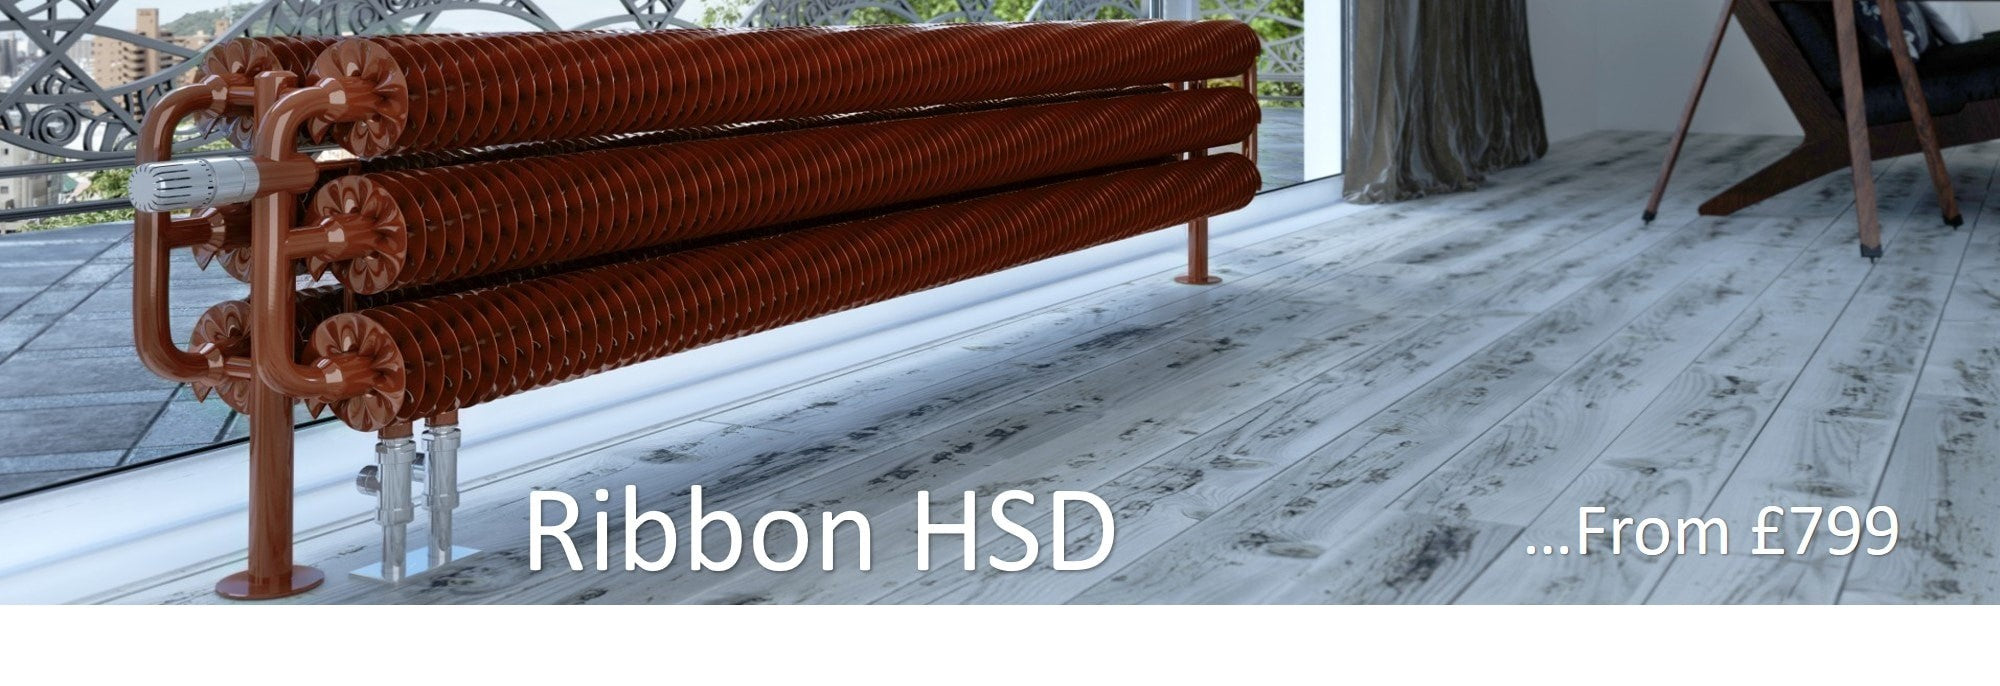 Terma Ribbon HSD Free Standing Designer Radiator